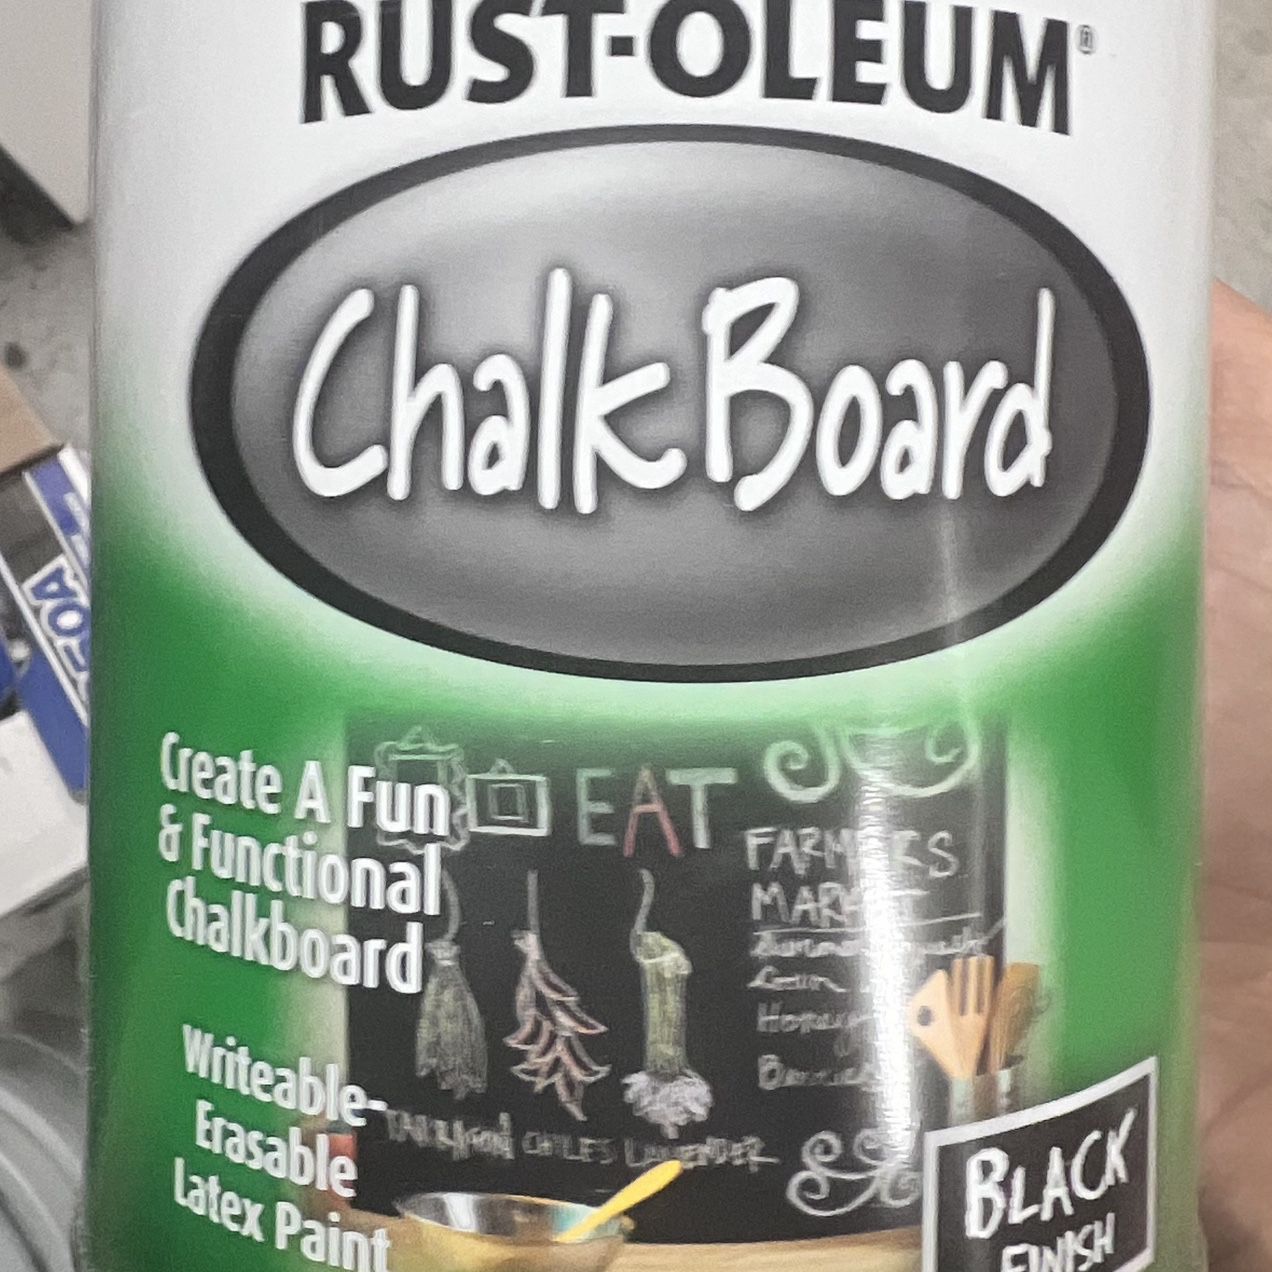 Rust-oleum chalkboard Paint for Sale in Playa Del Rey, CA - OfferUp